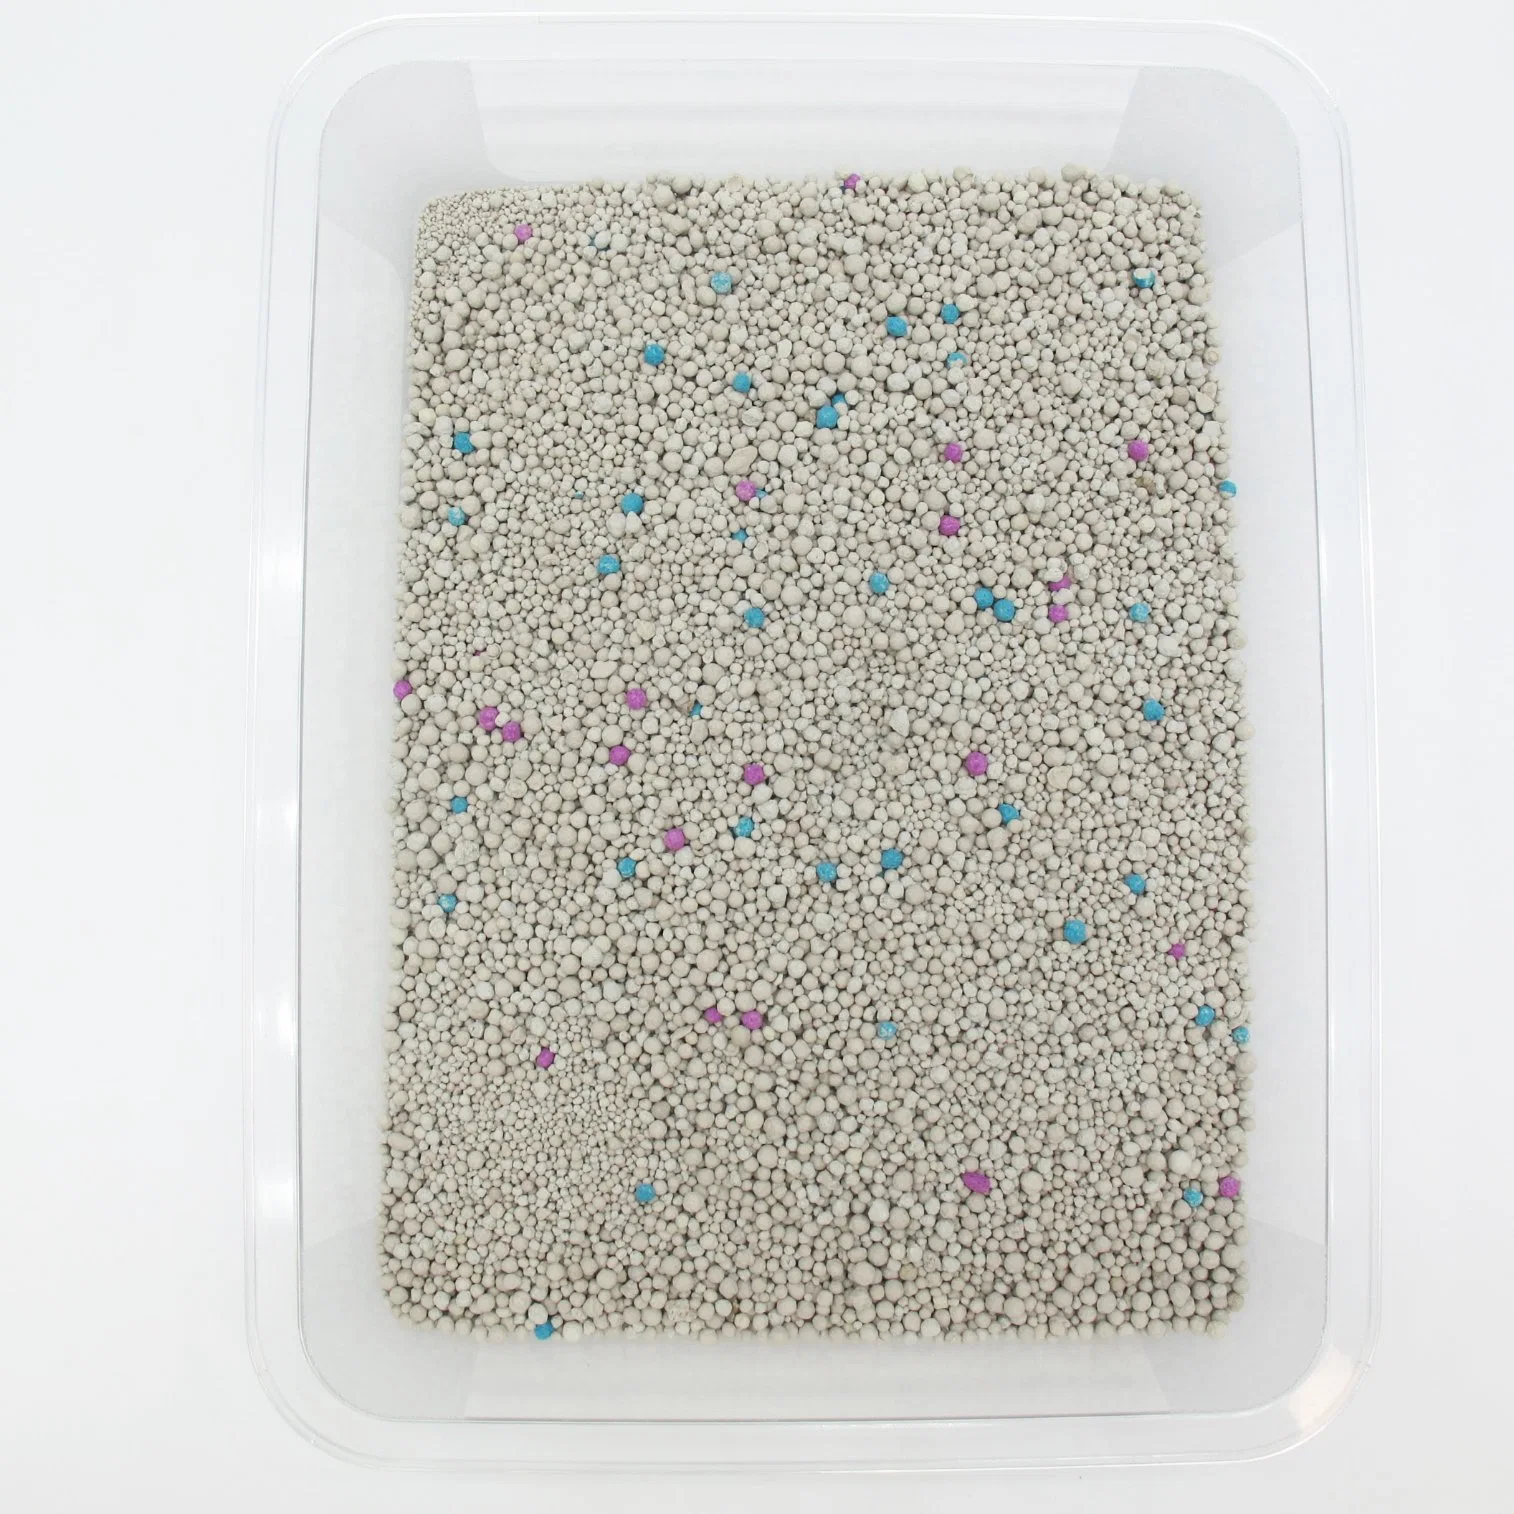 Natur Bio Umweltfreundliche Staubfreie Reinigung Verklumpung Montmorillonite Purple Crack Rock Erzfarbene Bentonit Ball Sands Haustierprodukte